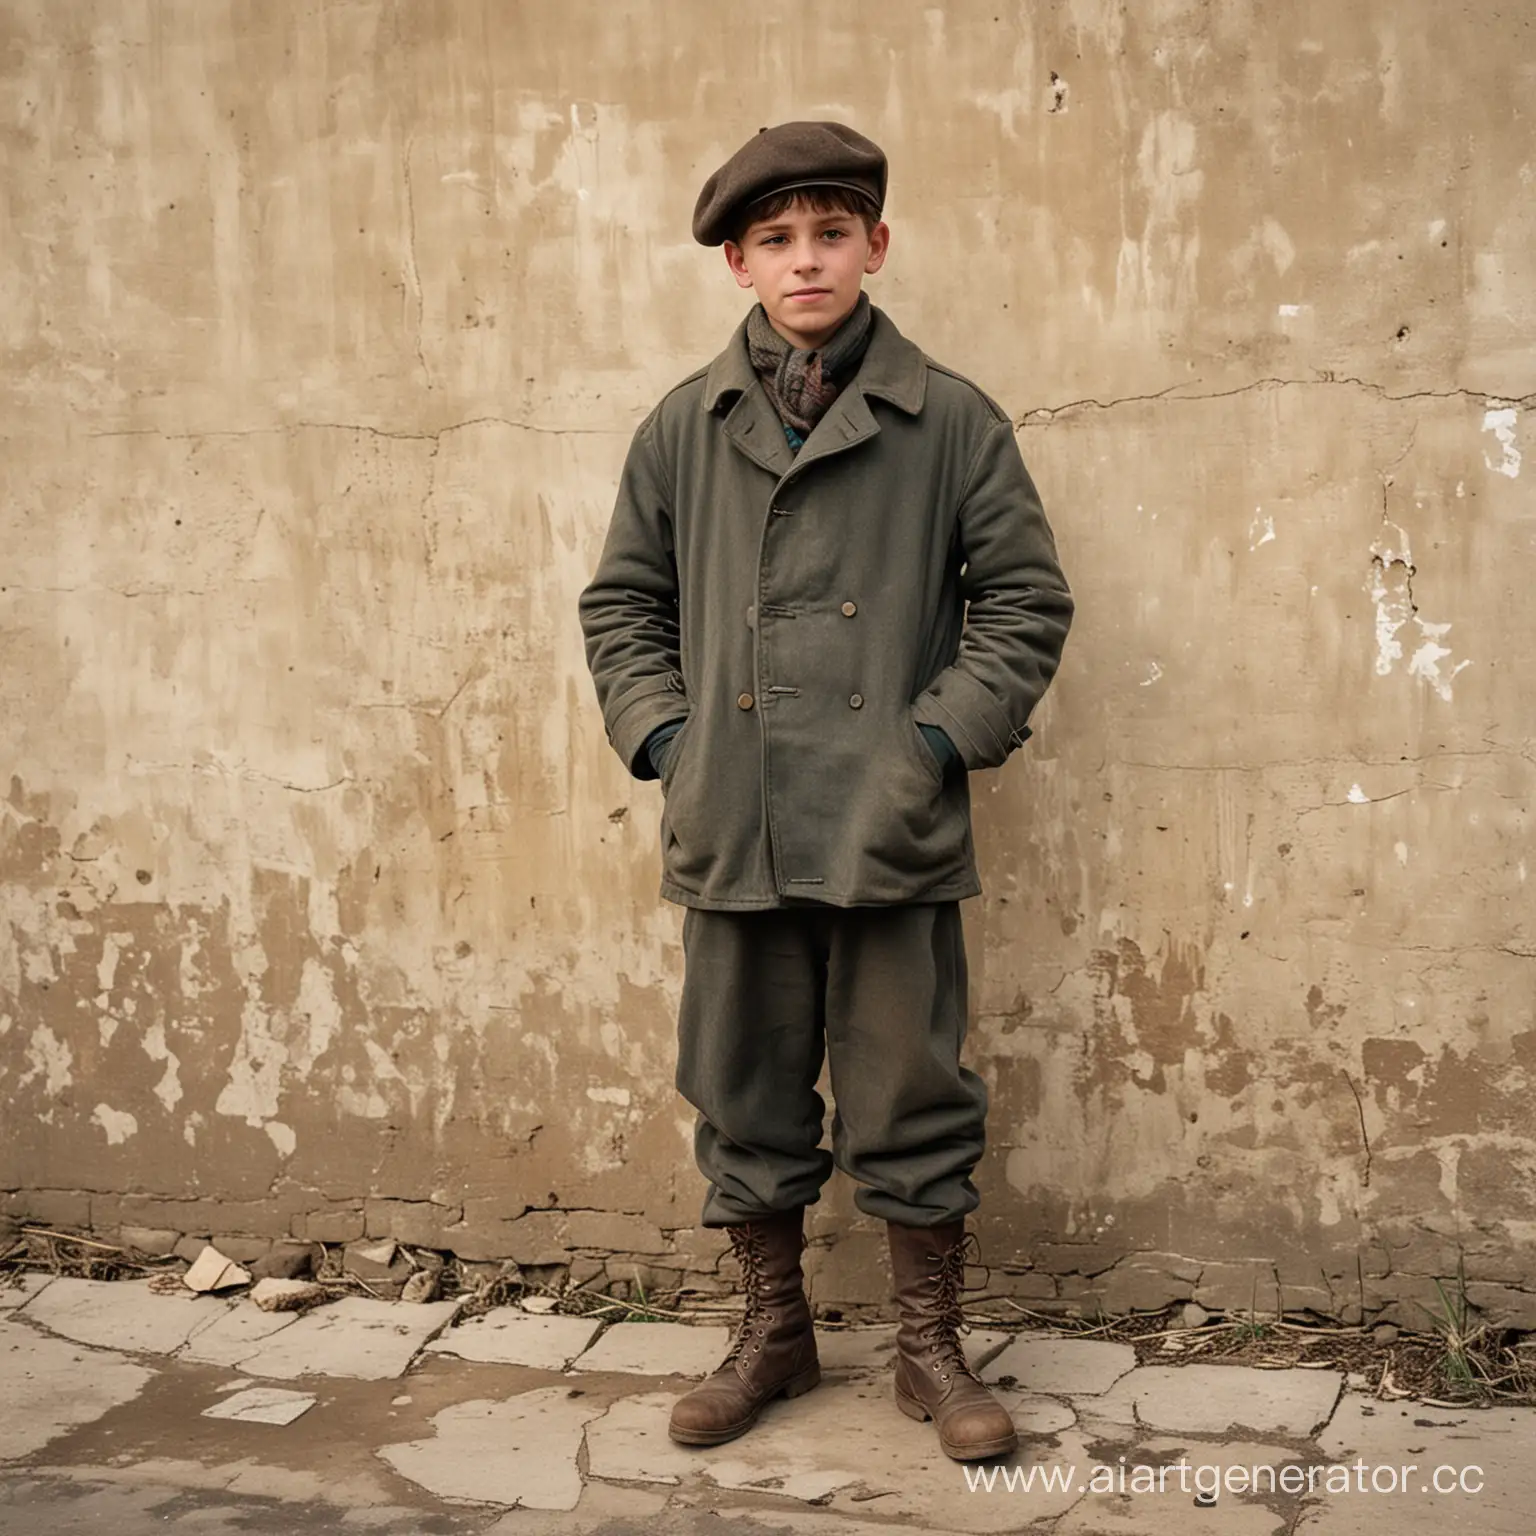 На дворе 1917 год. Стоит человек в пальто, штанах, берете и ободраных сапогах. Его возраст около 14 лет. Около него ещё четыре таких же человека стоят. Они стоят на фоне ободроной стены. На улице зима.